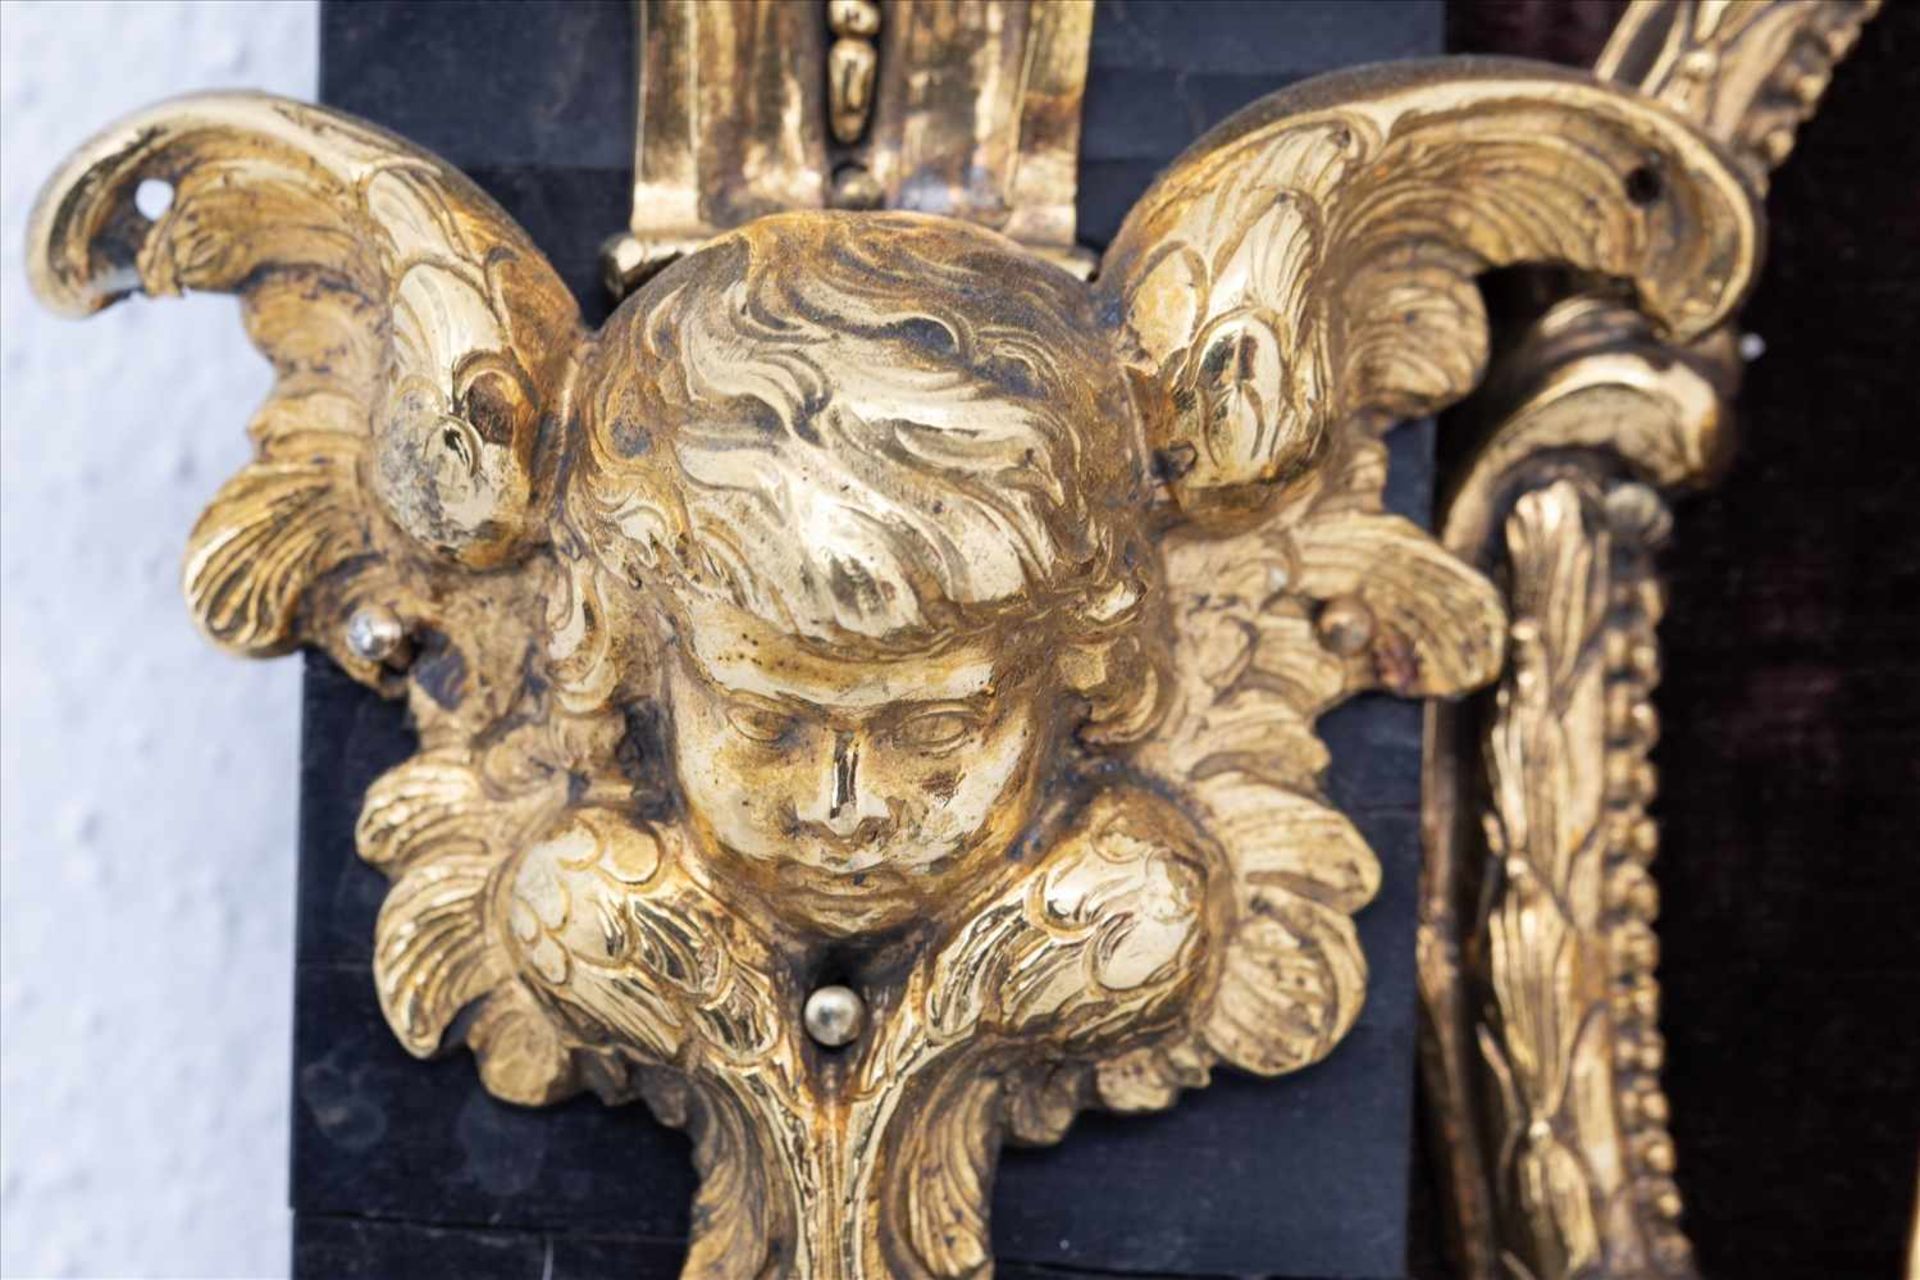 Barocker Hausaltar, Italien 17. Jh.Darstellung der Kreuzigung und Passion Christi, Bronze vergoldet, - Bild 7 aus 13